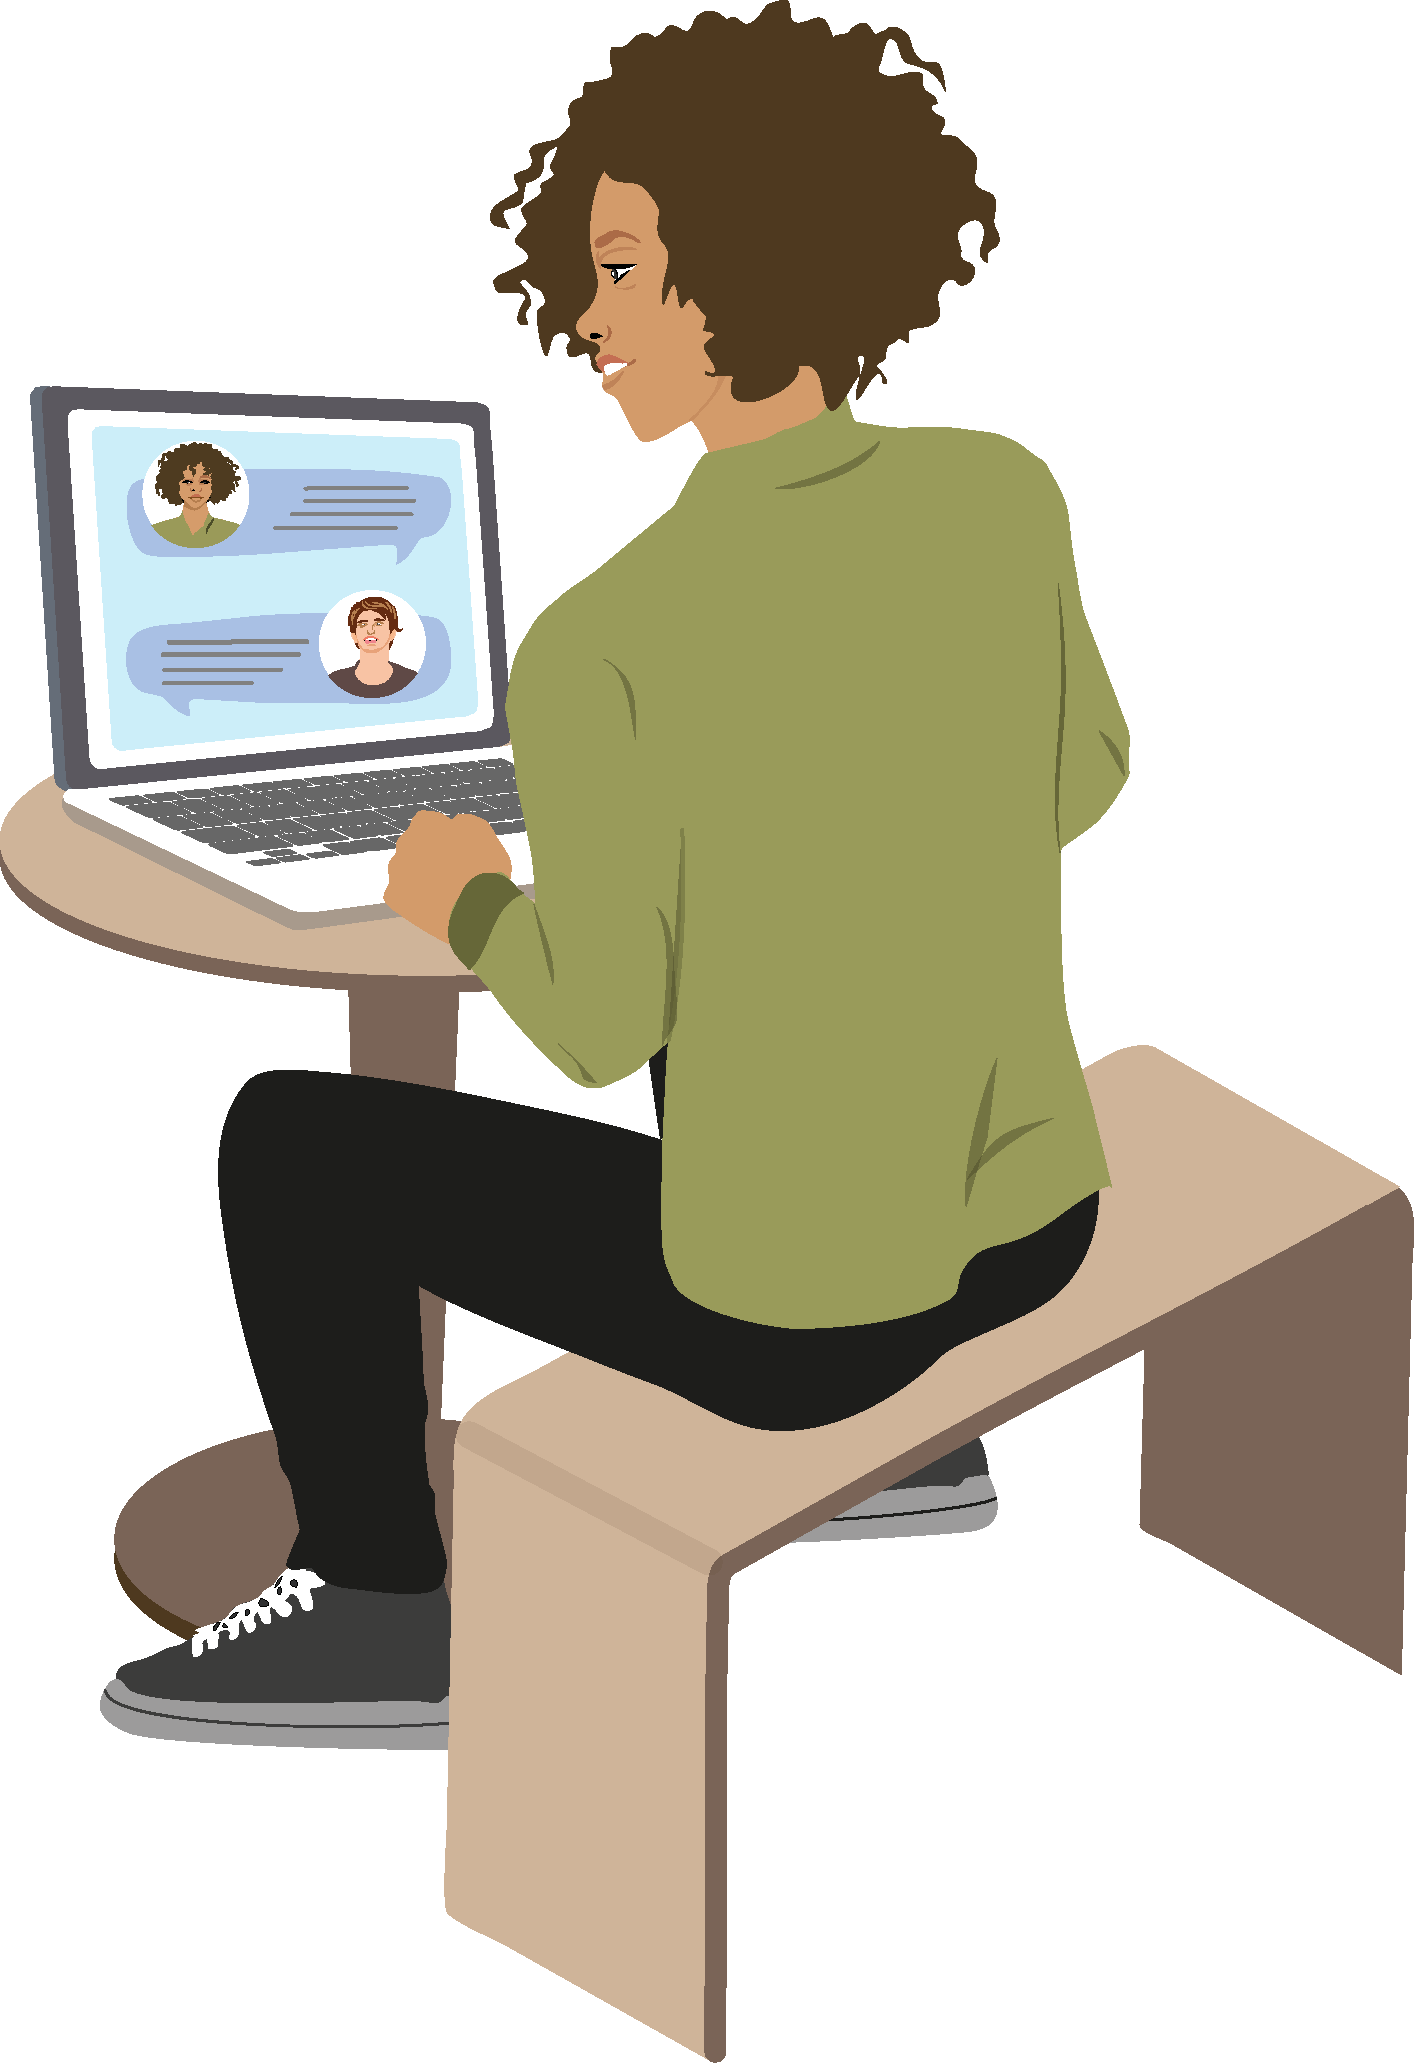 Eine Jugendliche vor aufgeklapptem Laptop-Display sitzt am Tisch chattet mit Freund:innen. Die "Über-die-Schulter-Perspektive" veranschaulicht, dass hinter ihr befindliche Personen durch das so genannte "Schultersurfen" einen freien Blick auf ihre vertraulichen Daten haben